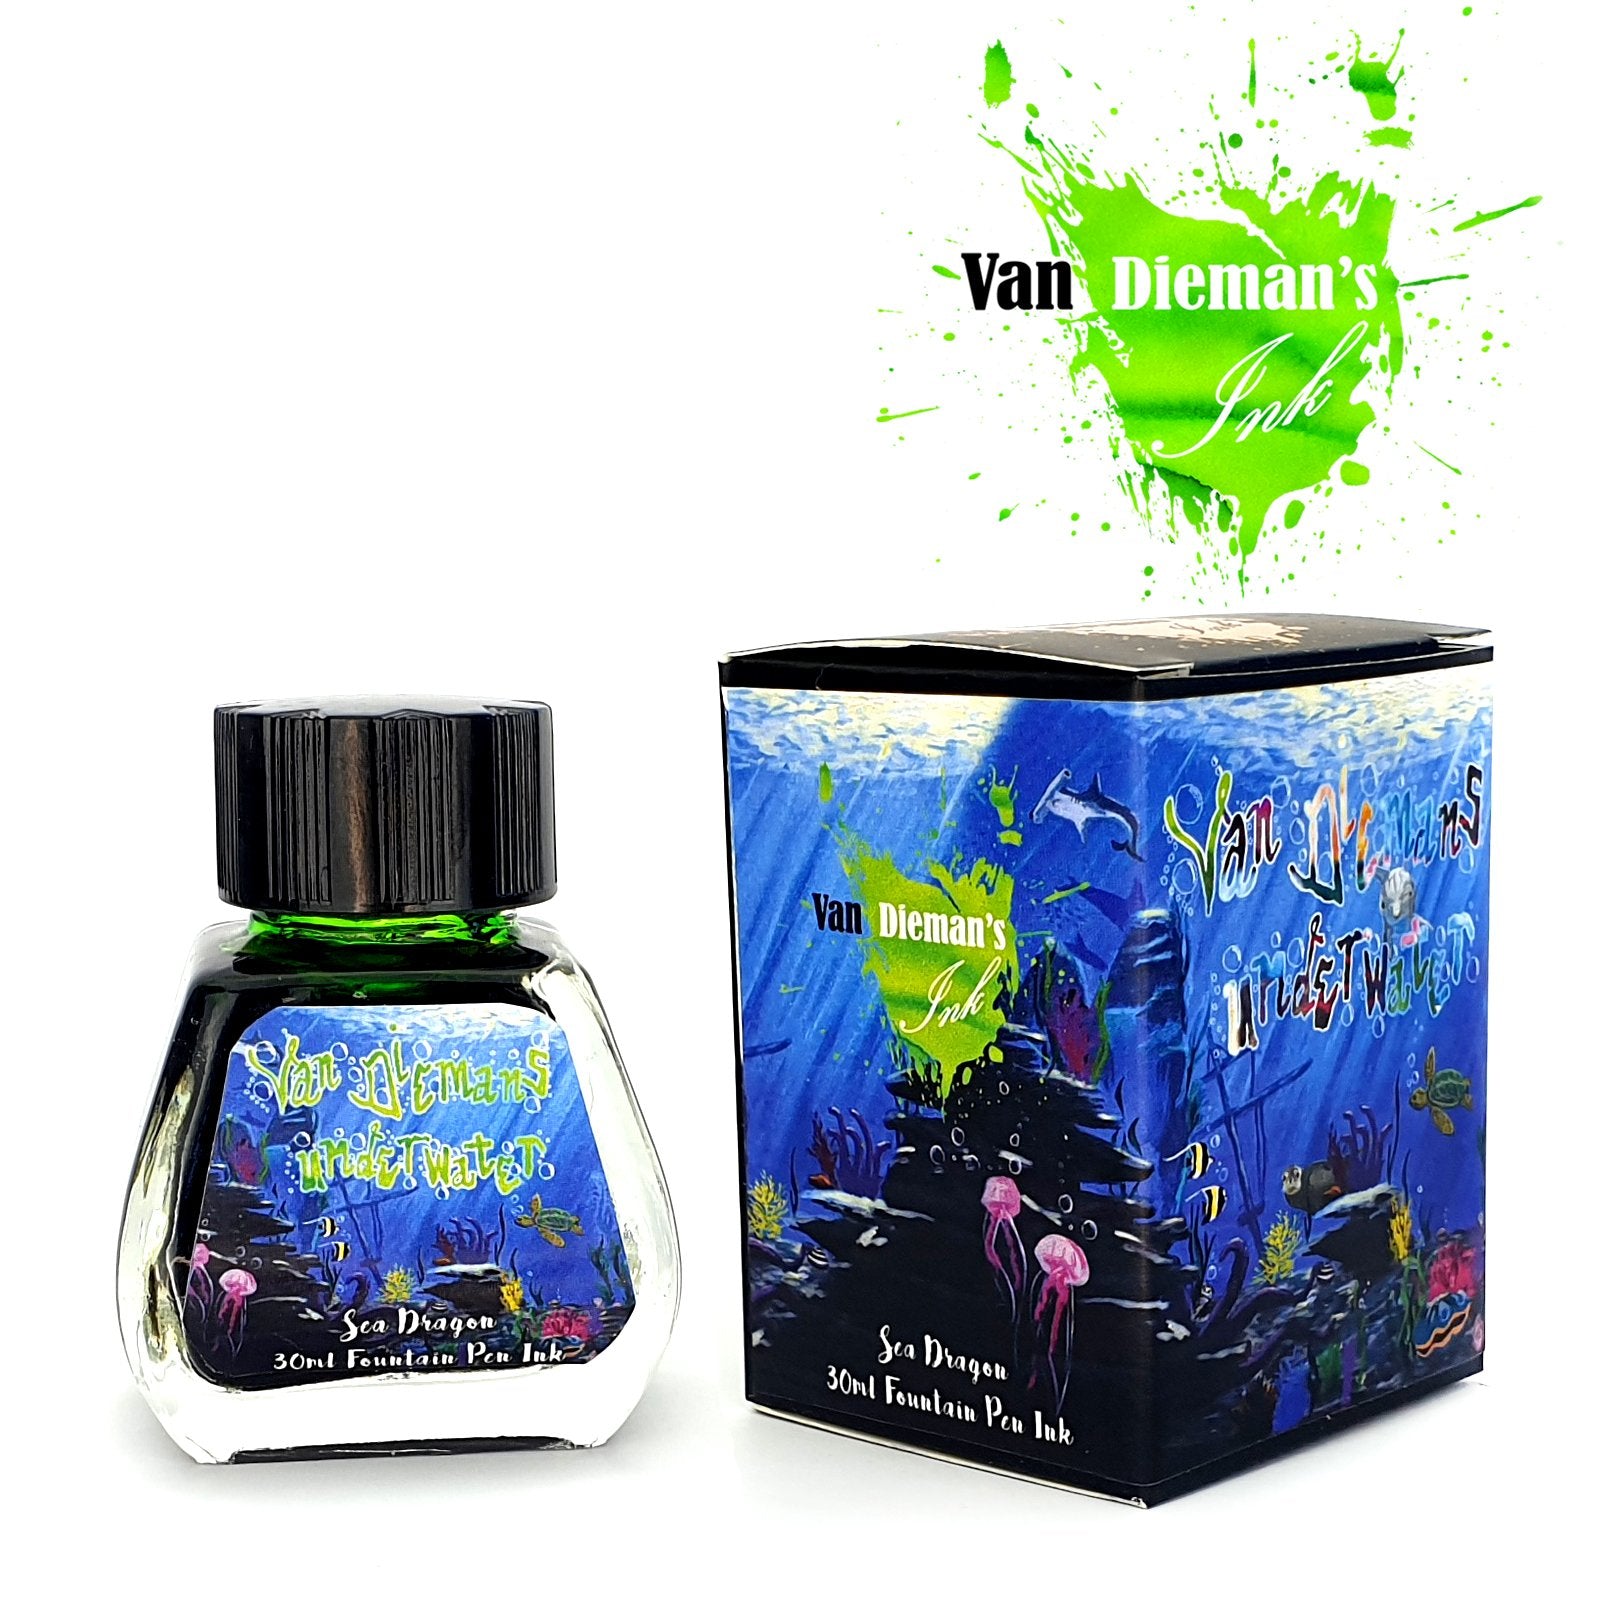 Van Dieman's Underwater Series- Sea Dragon